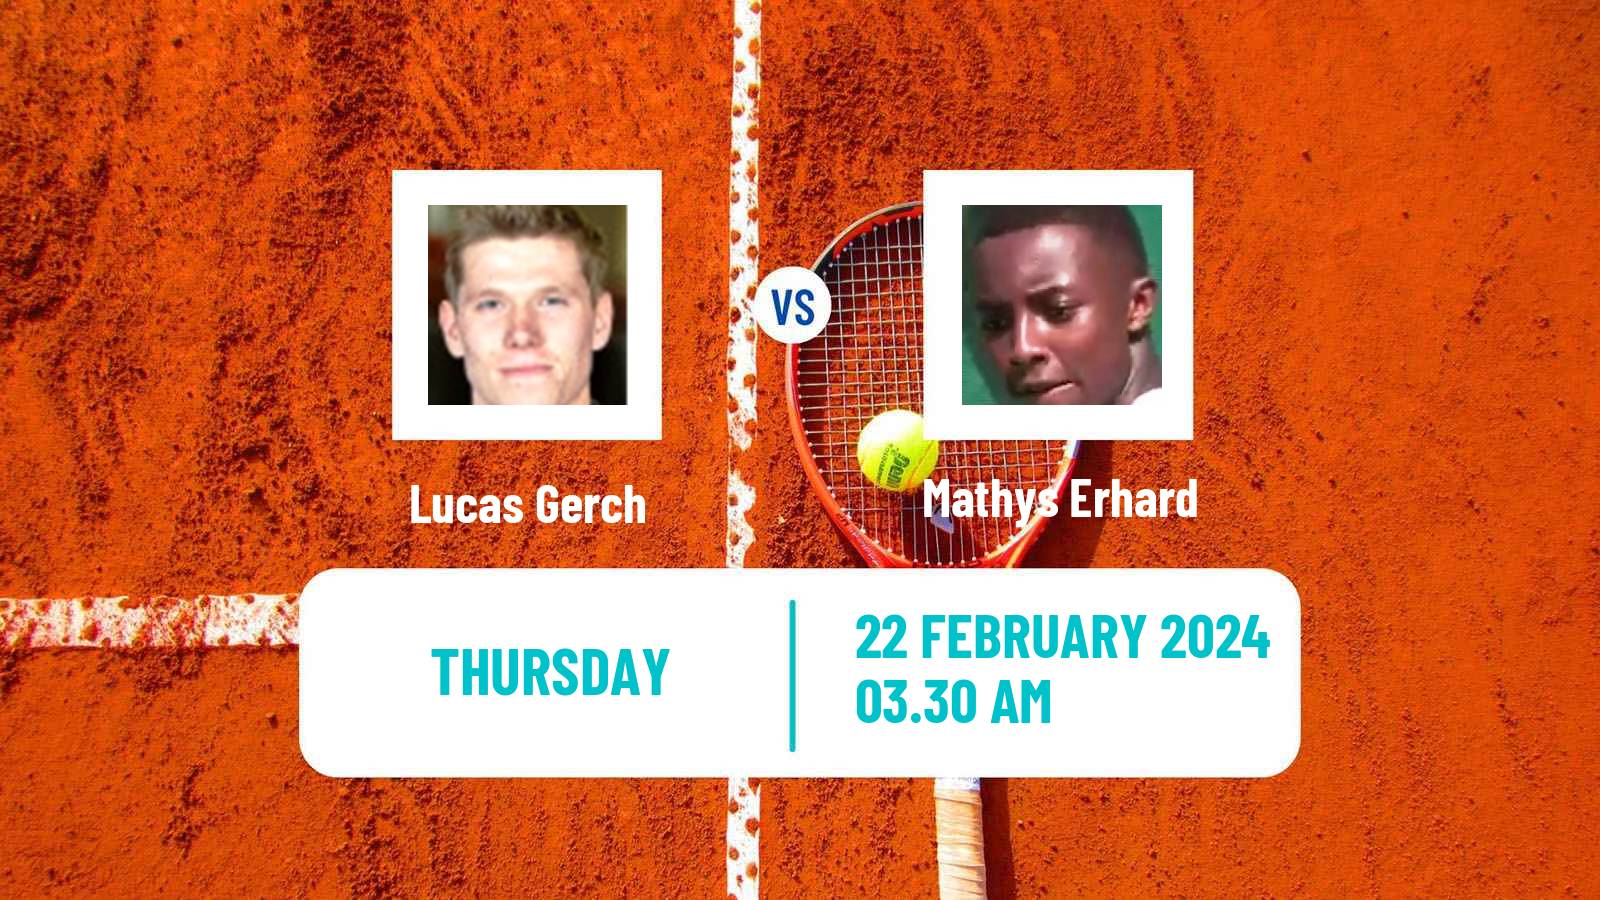 Tennis ITF M25 Antalya 4 Men Lucas Gerch - Mathys Erhard